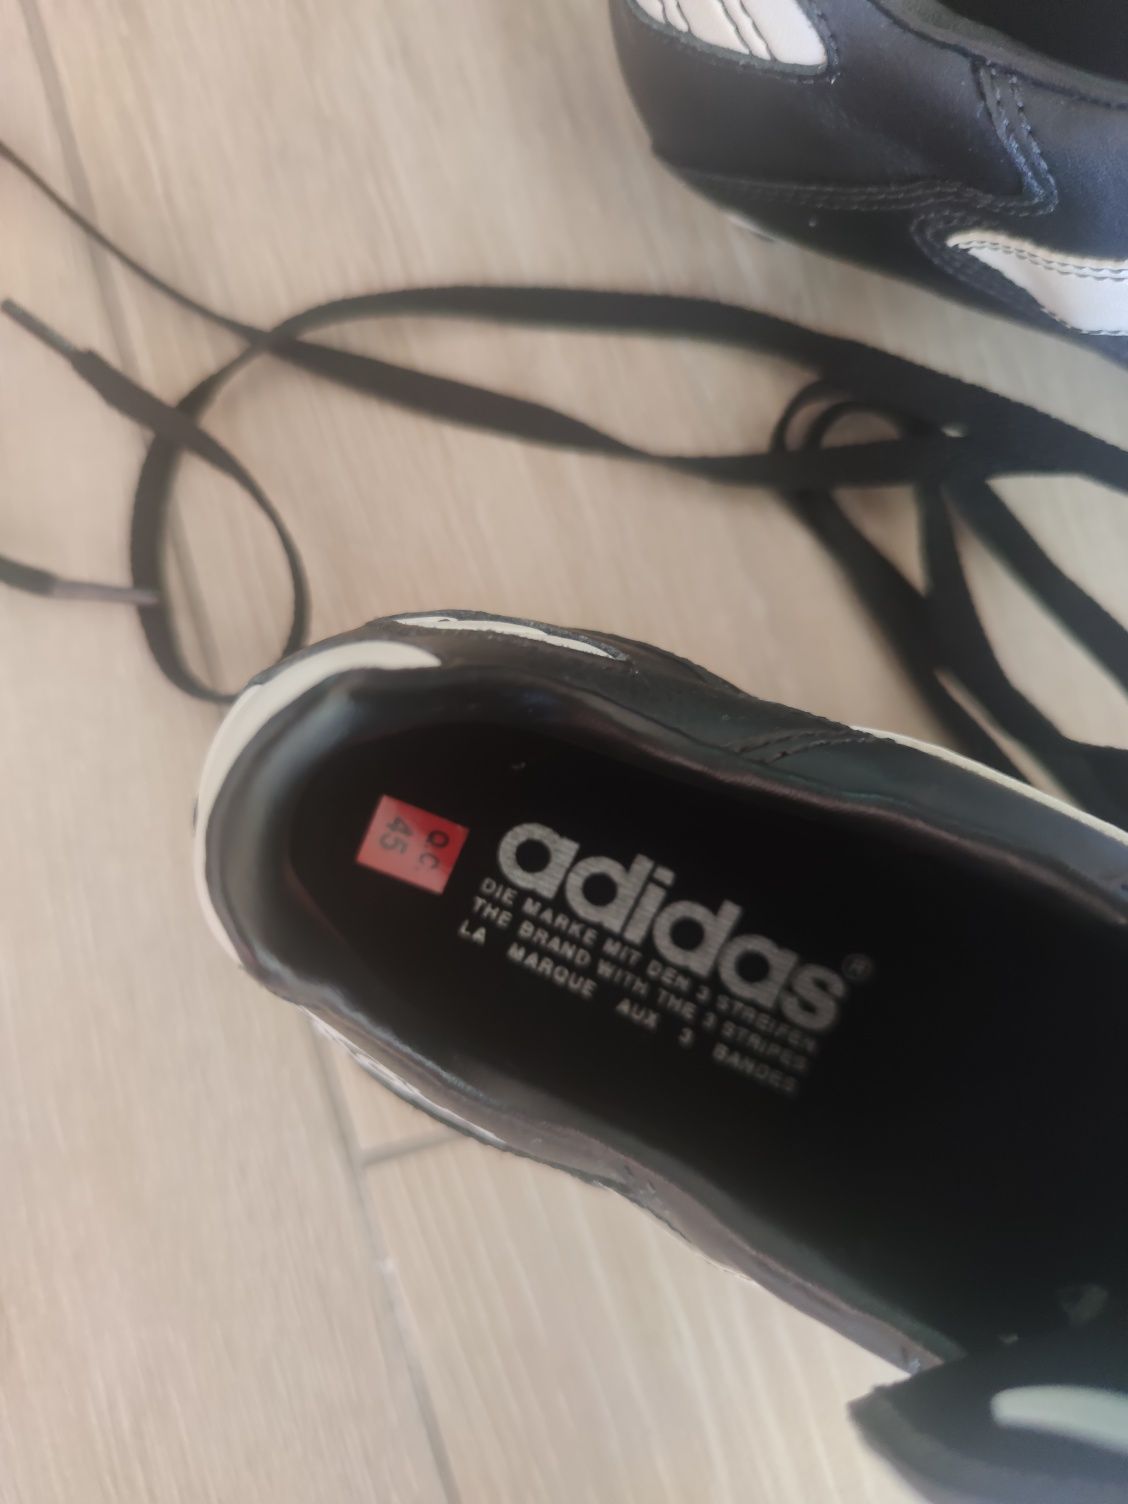 Buty piłkarskie korki, rozmiar 45, czarne, firmy ADIDAS